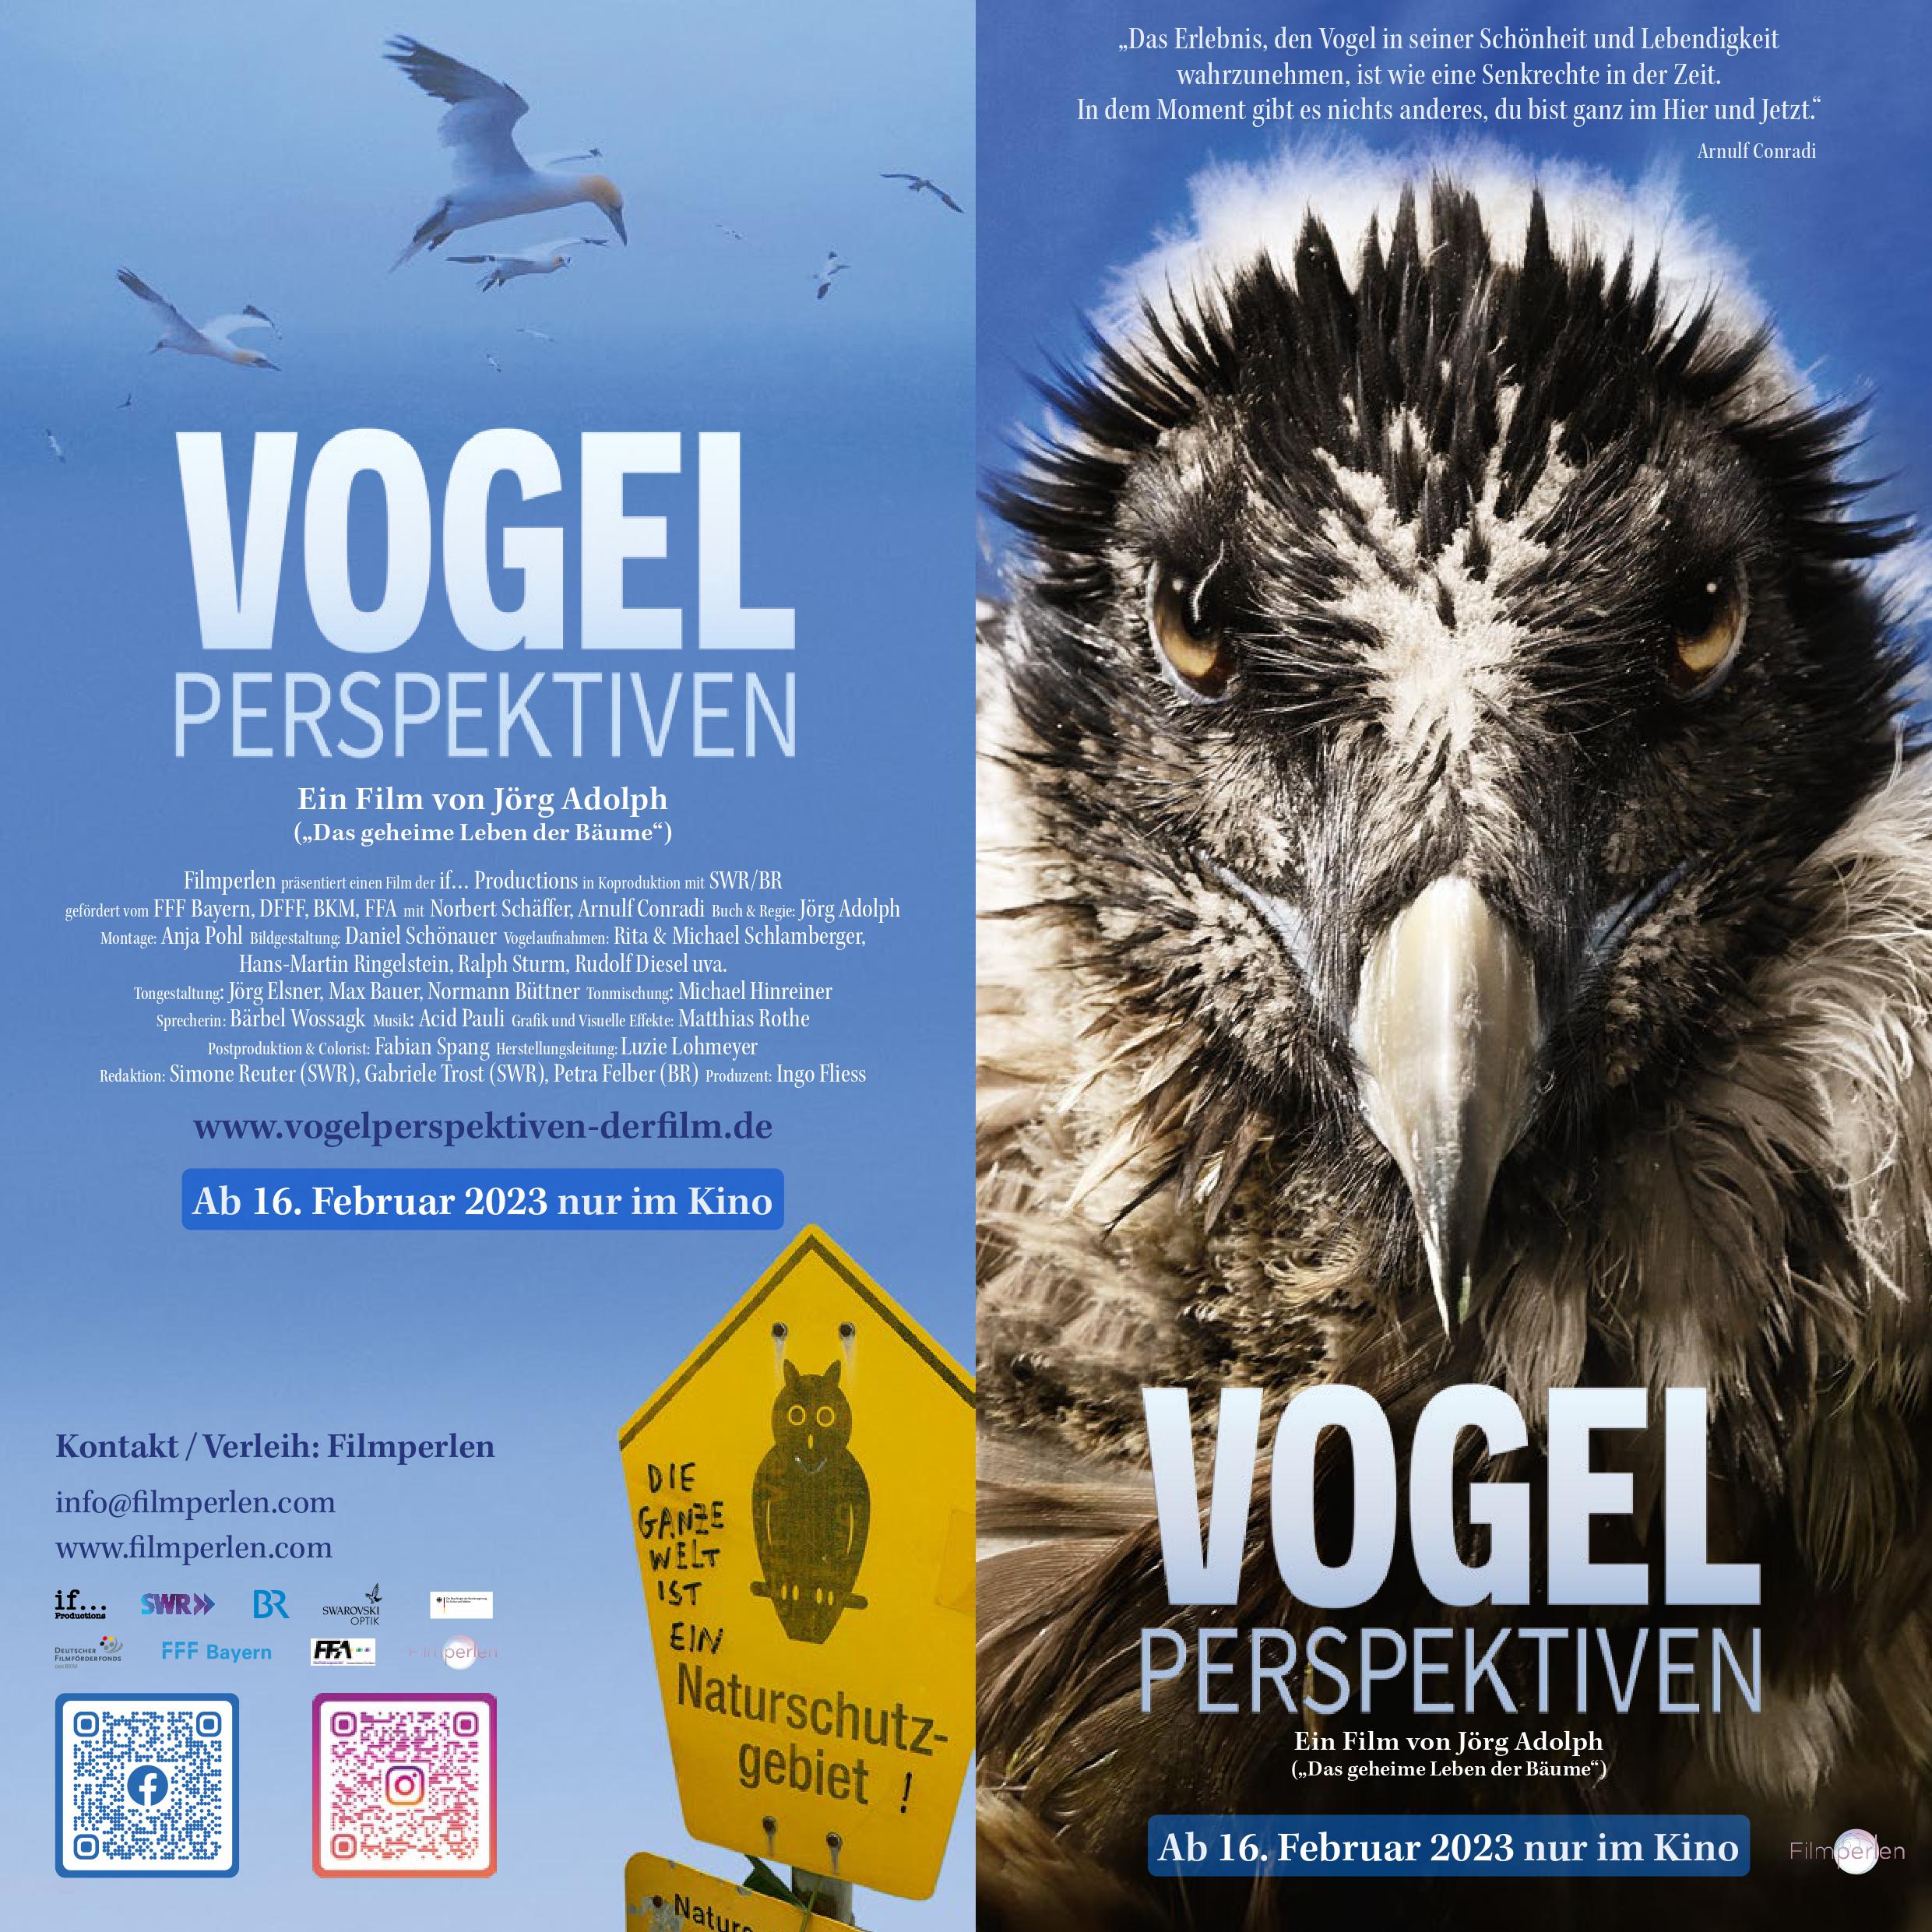 (c) Vogelperspektiven-derfilm.de